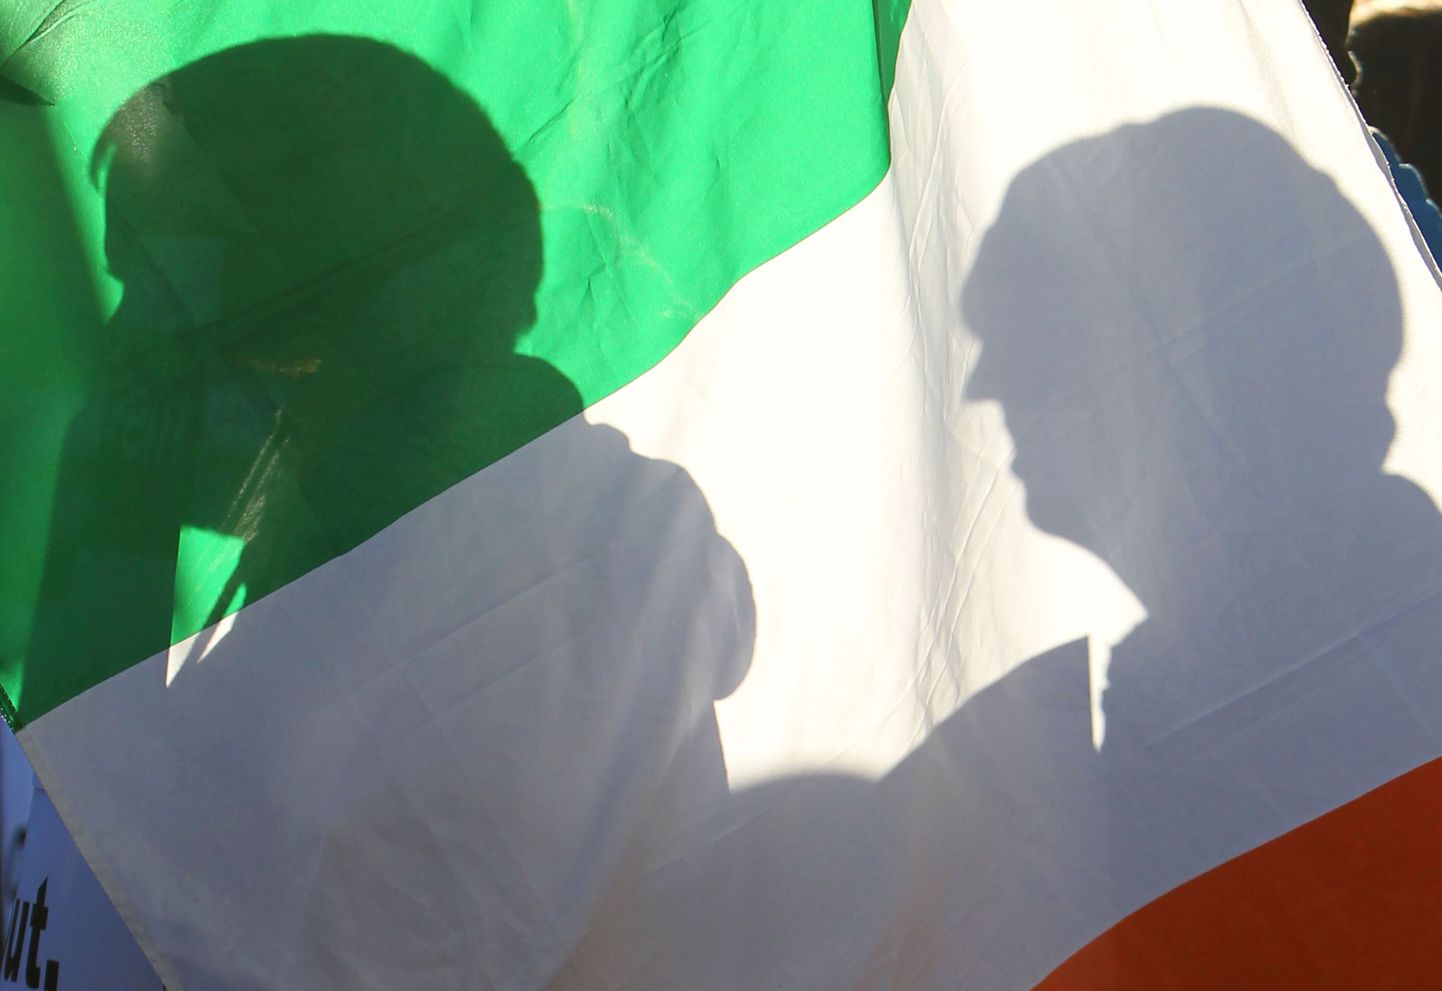 Protestimiitingul osalejad 24.novembril Dublinis.  Iiri  valitsus esitles nelja aasta kokkuhoiukava.